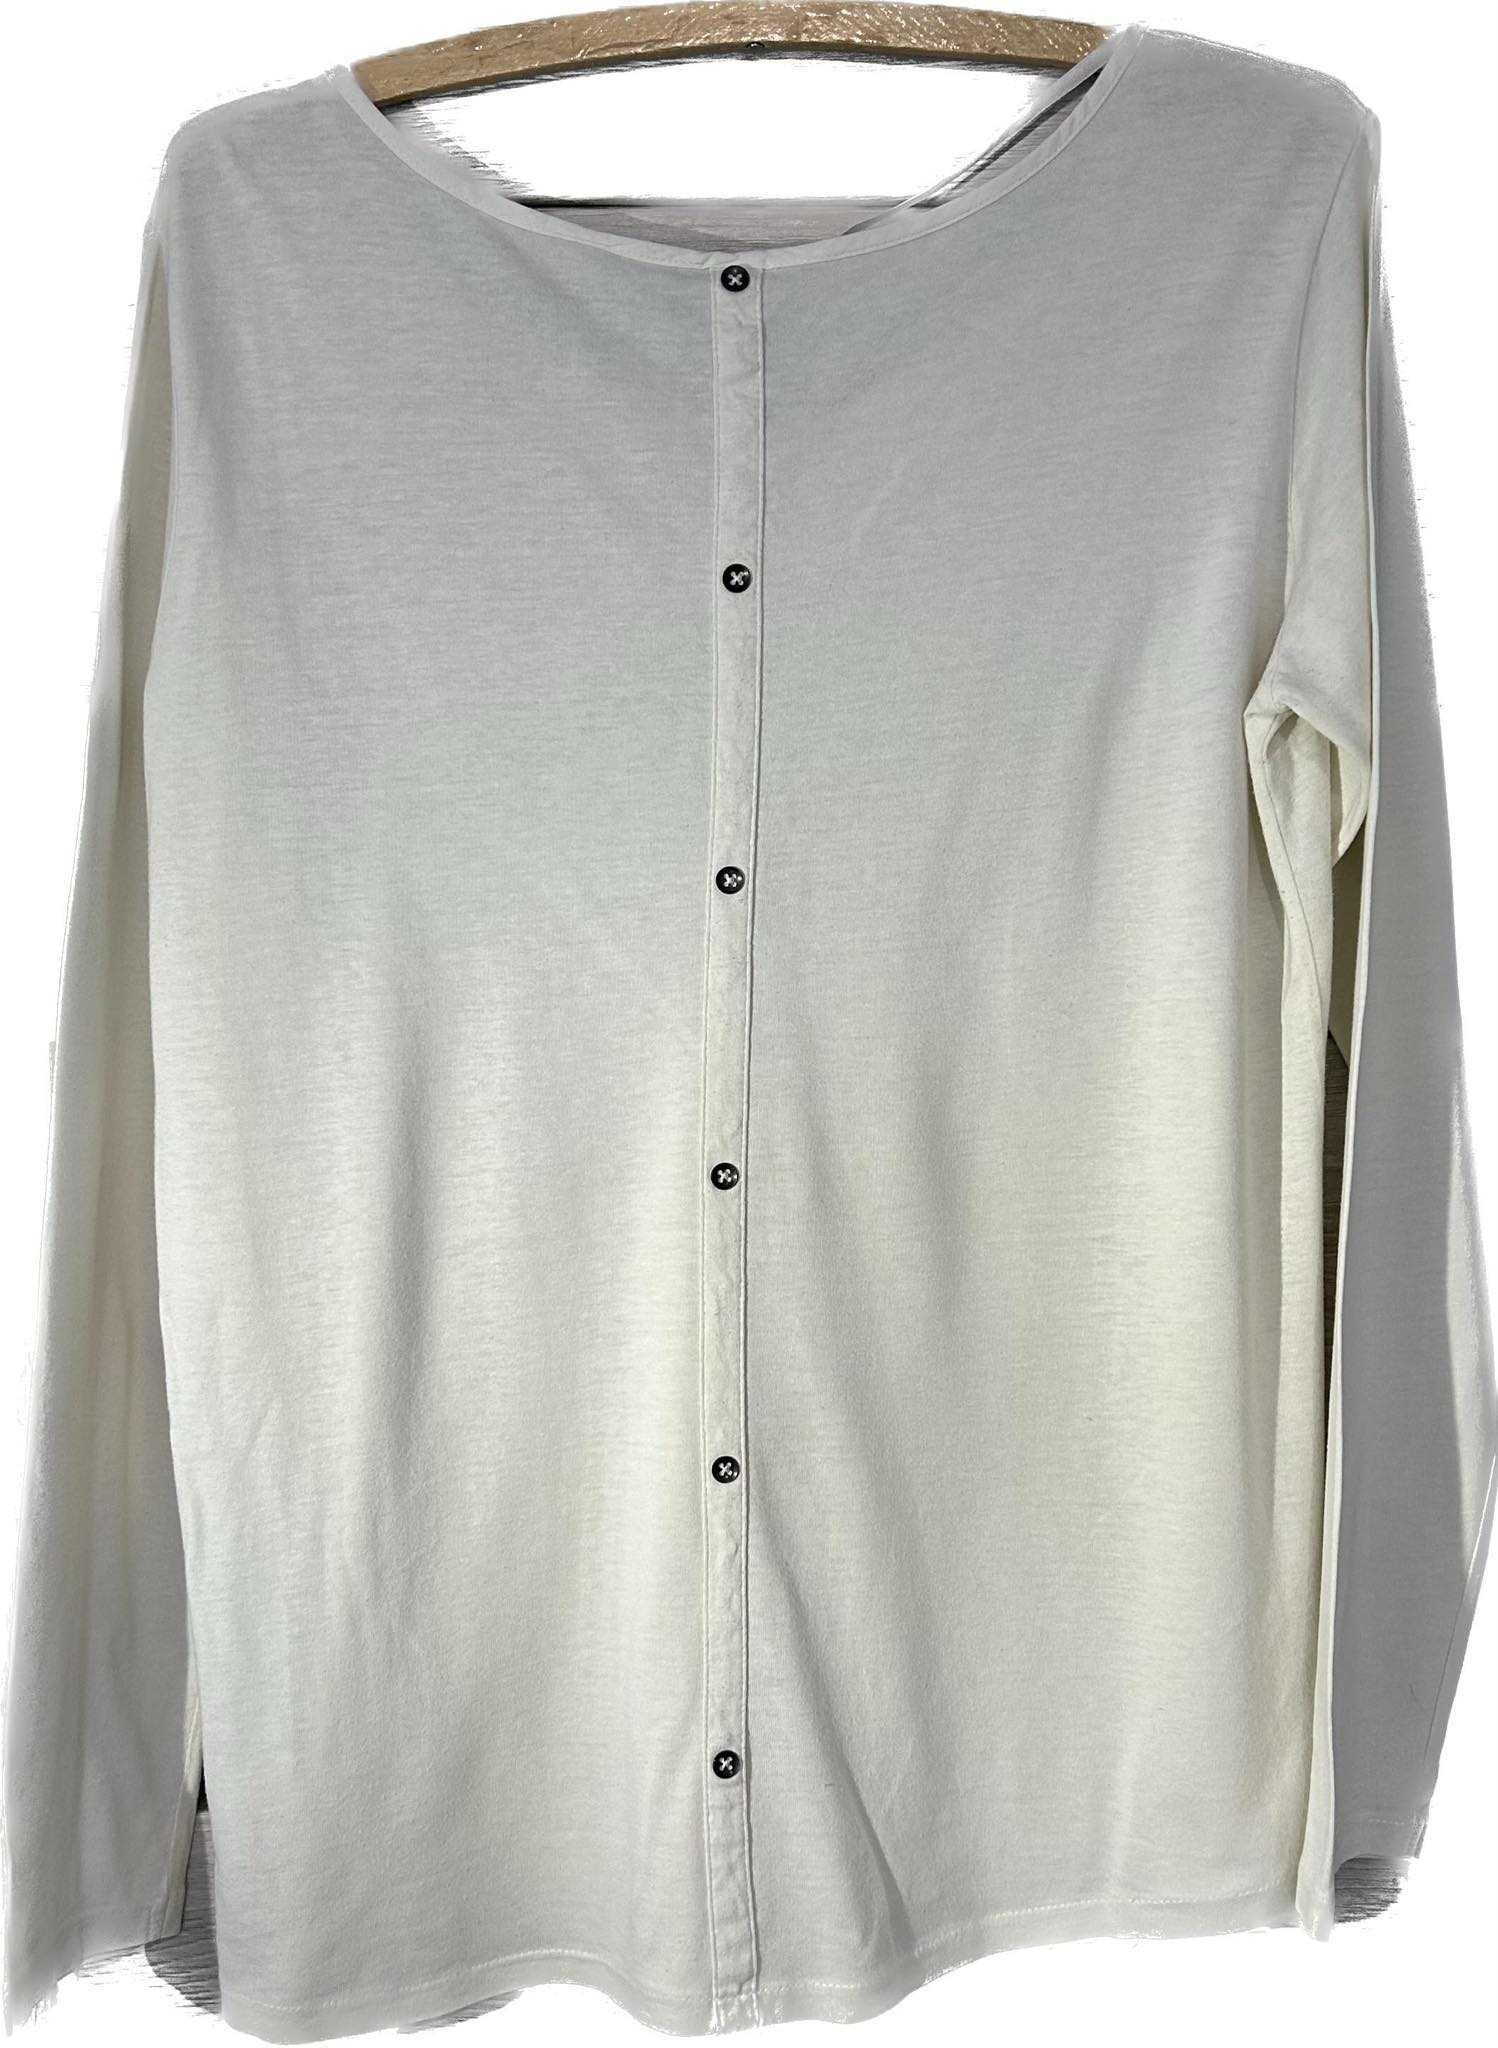 Przewiewna koszulka z guzikami na plecach, rozmiar XL